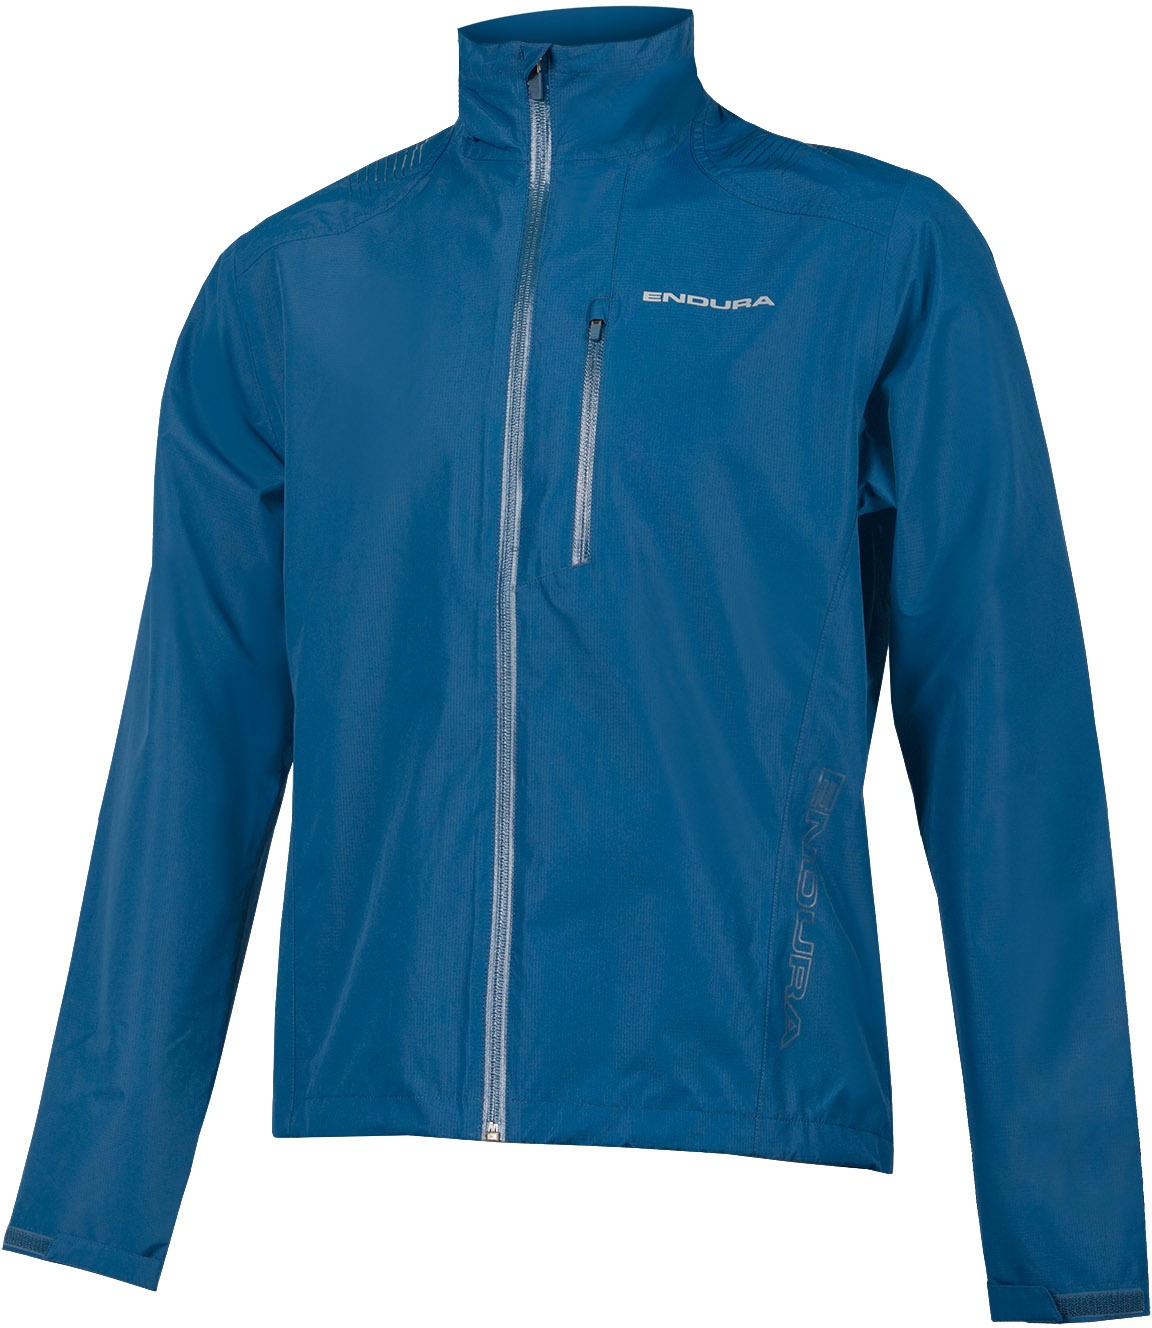 Beklædning - Cykeljakker - Endura Hummvee Waterproof Jacket - Blå